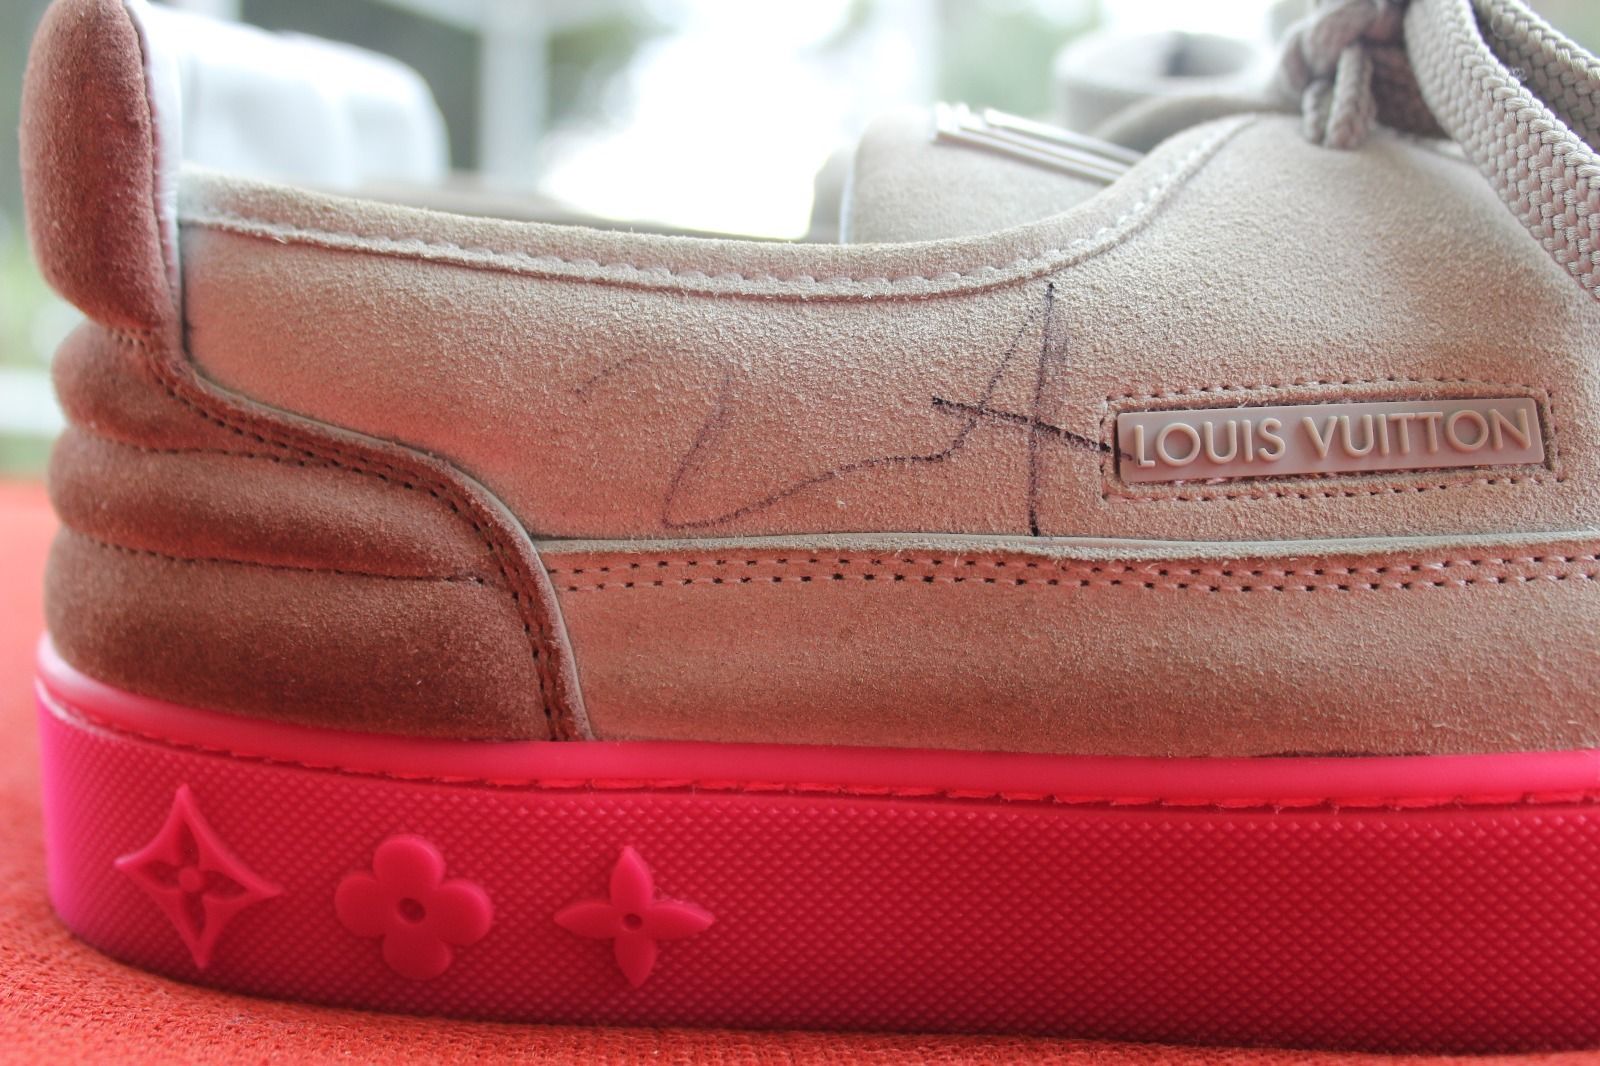 Louis Vuitton Mr. Hudson Kanye Grey/Pink (Signed) Men's - YP6U8PSC